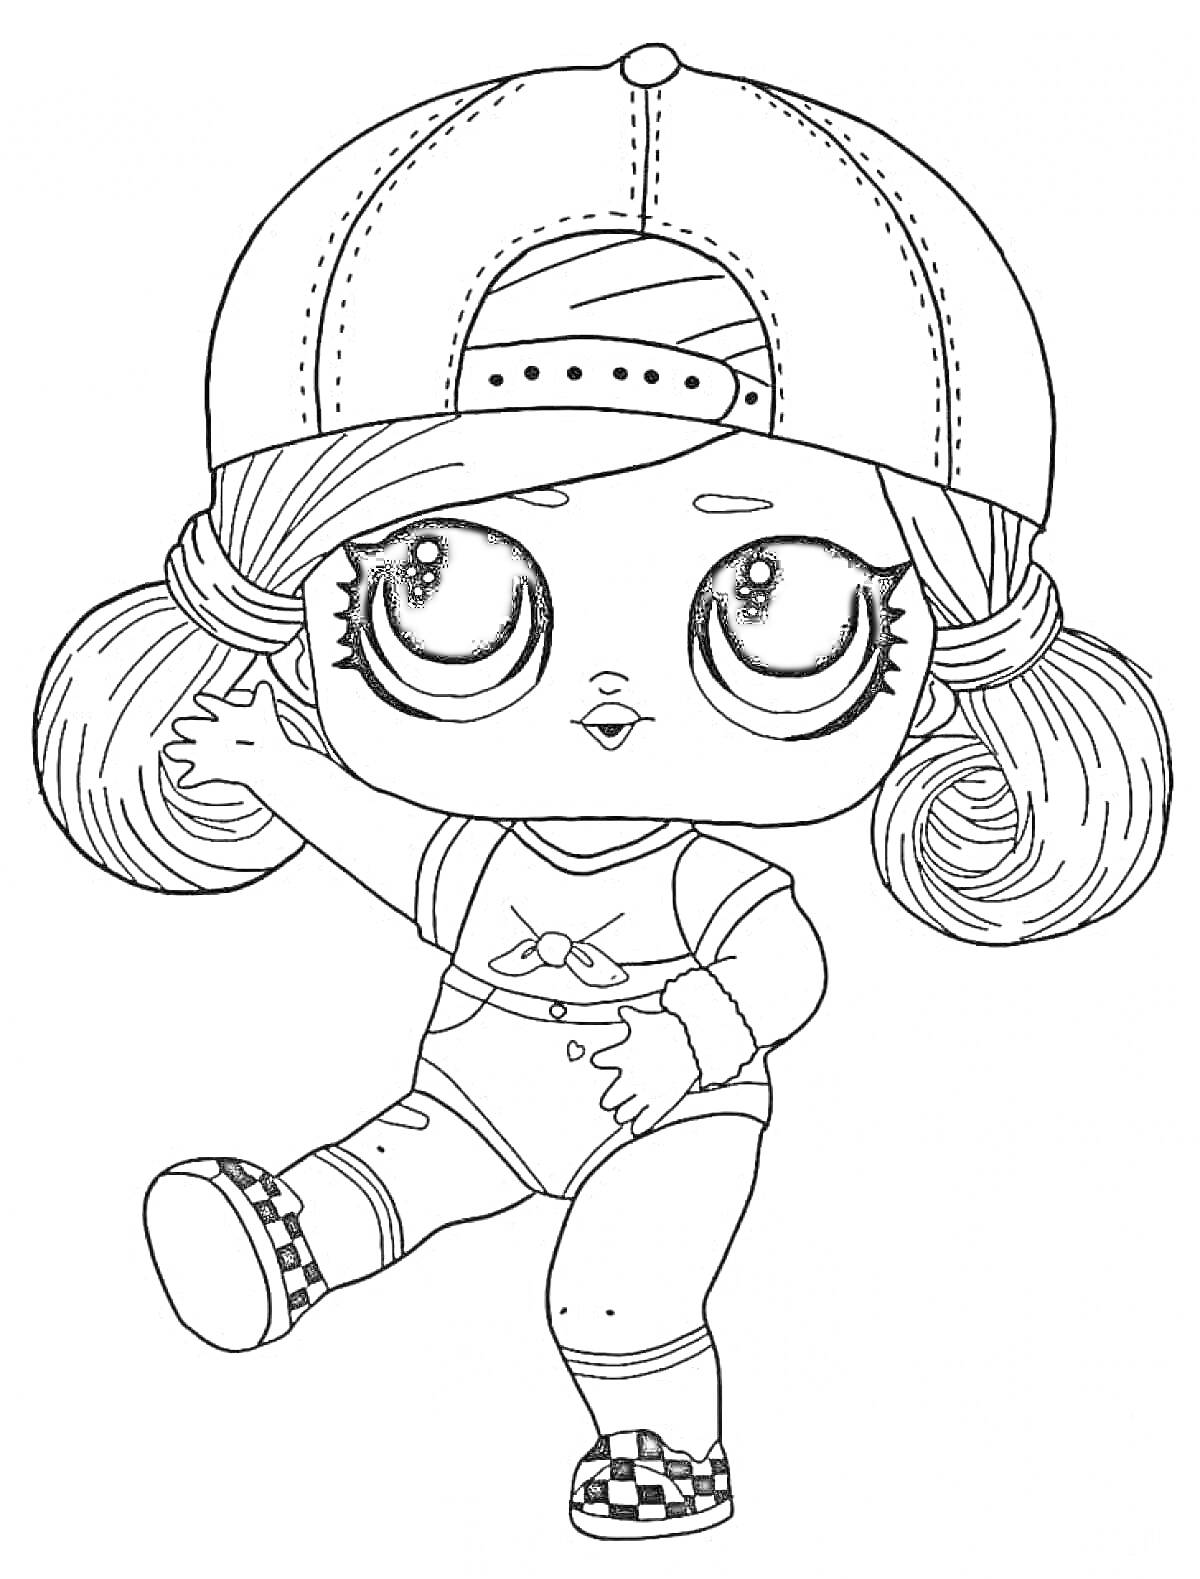 Раскраска Кукла ЛОЛ в кепке с двумя хвостиками, футболке и кроссовках